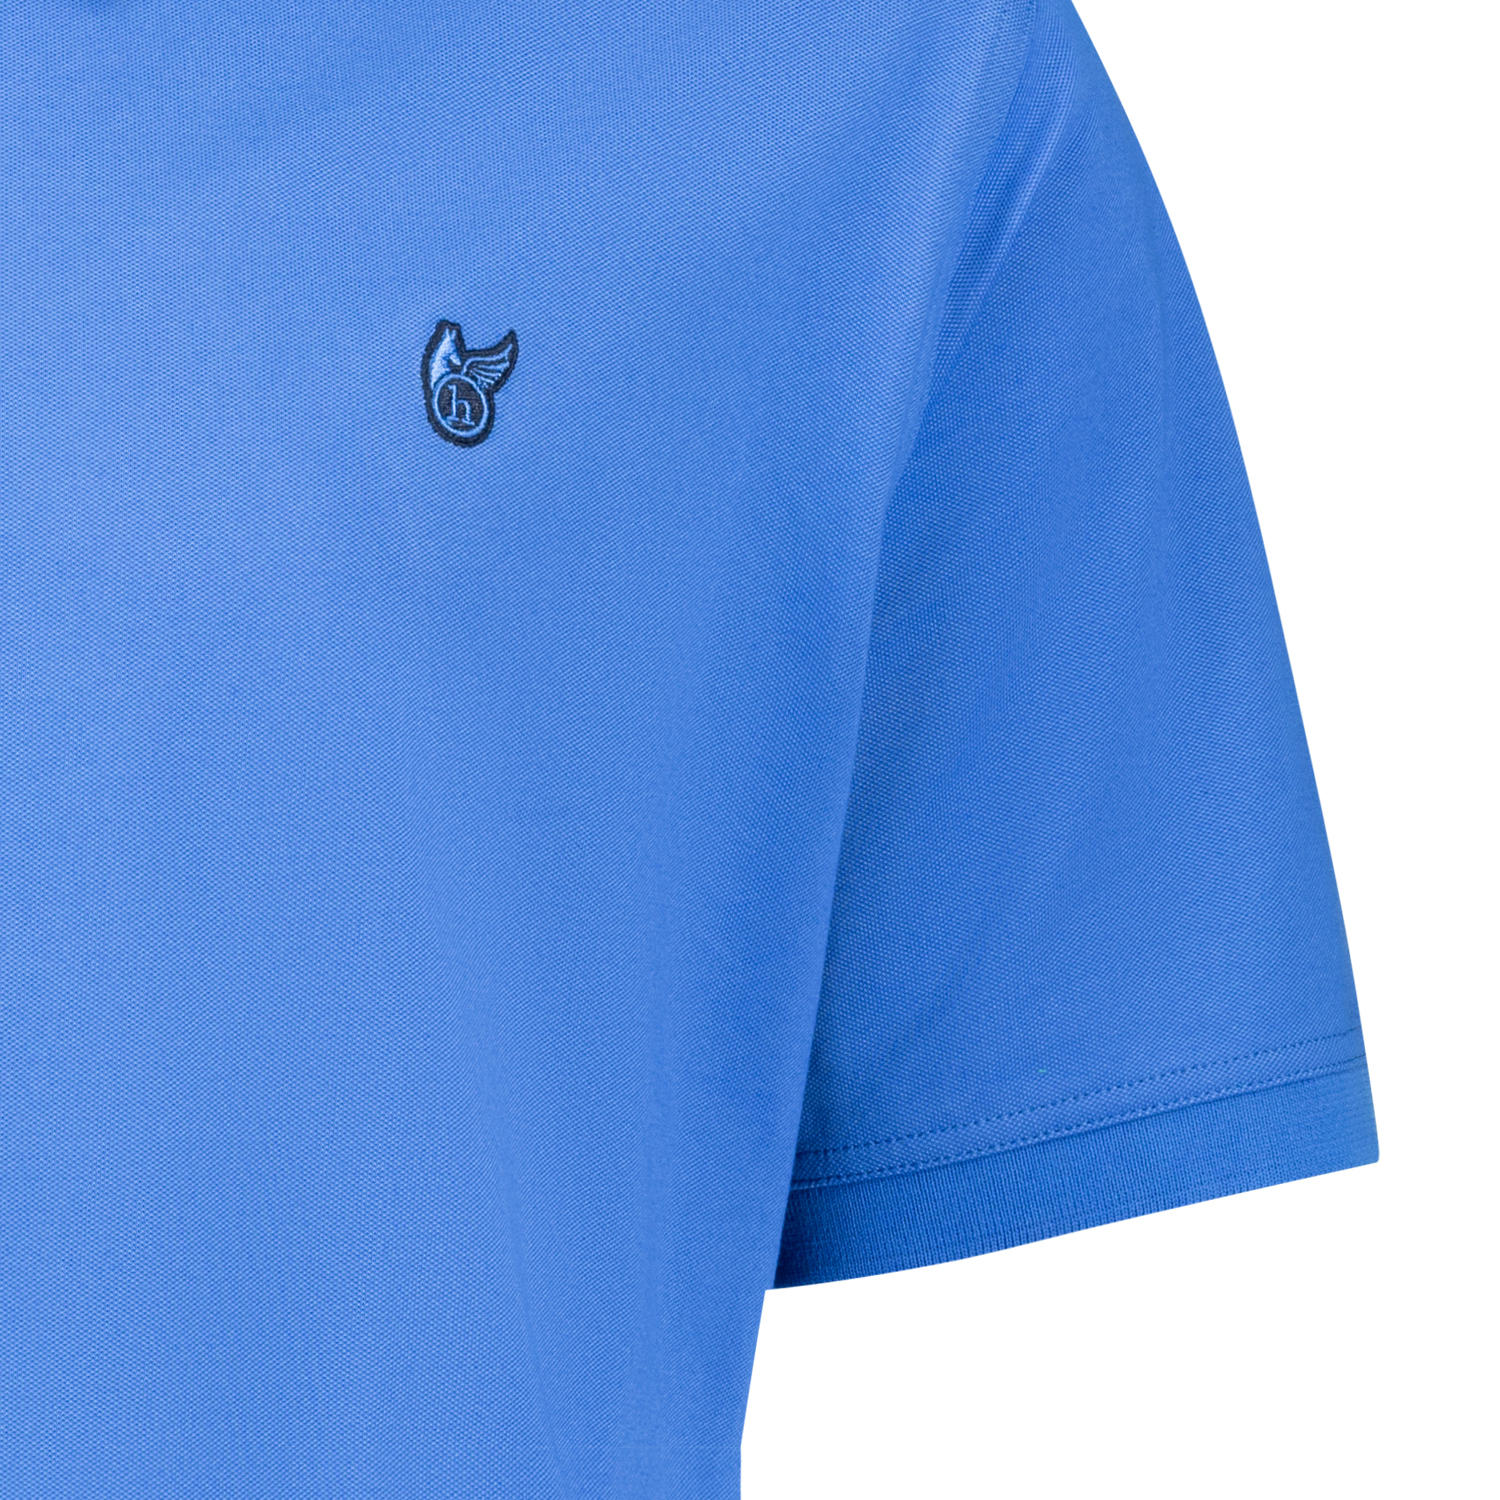 Kurzärmliges Herren Polo Shirt "stay fresh" von Hajo azurblau in großen Größen 3XL bis 6XL